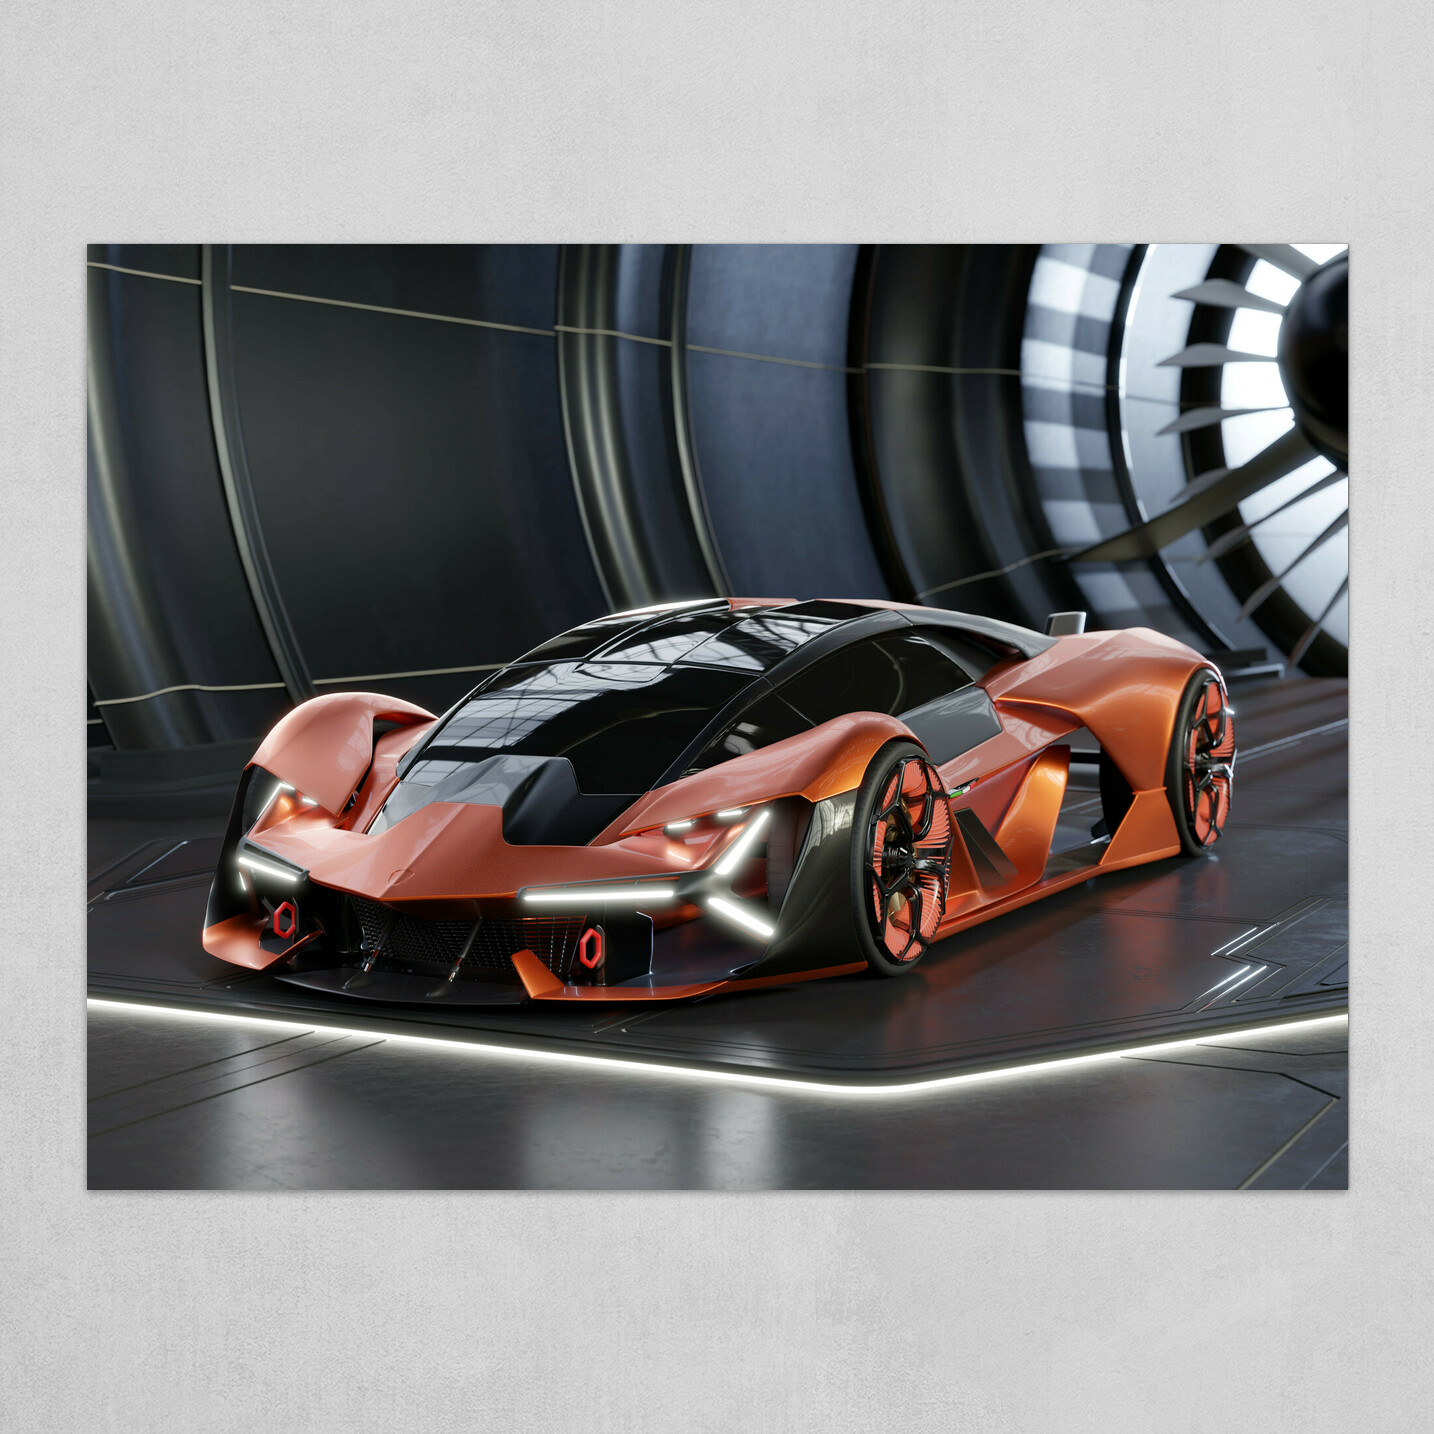 The Lambo of the Future! Lamborghini Terzo Millenio